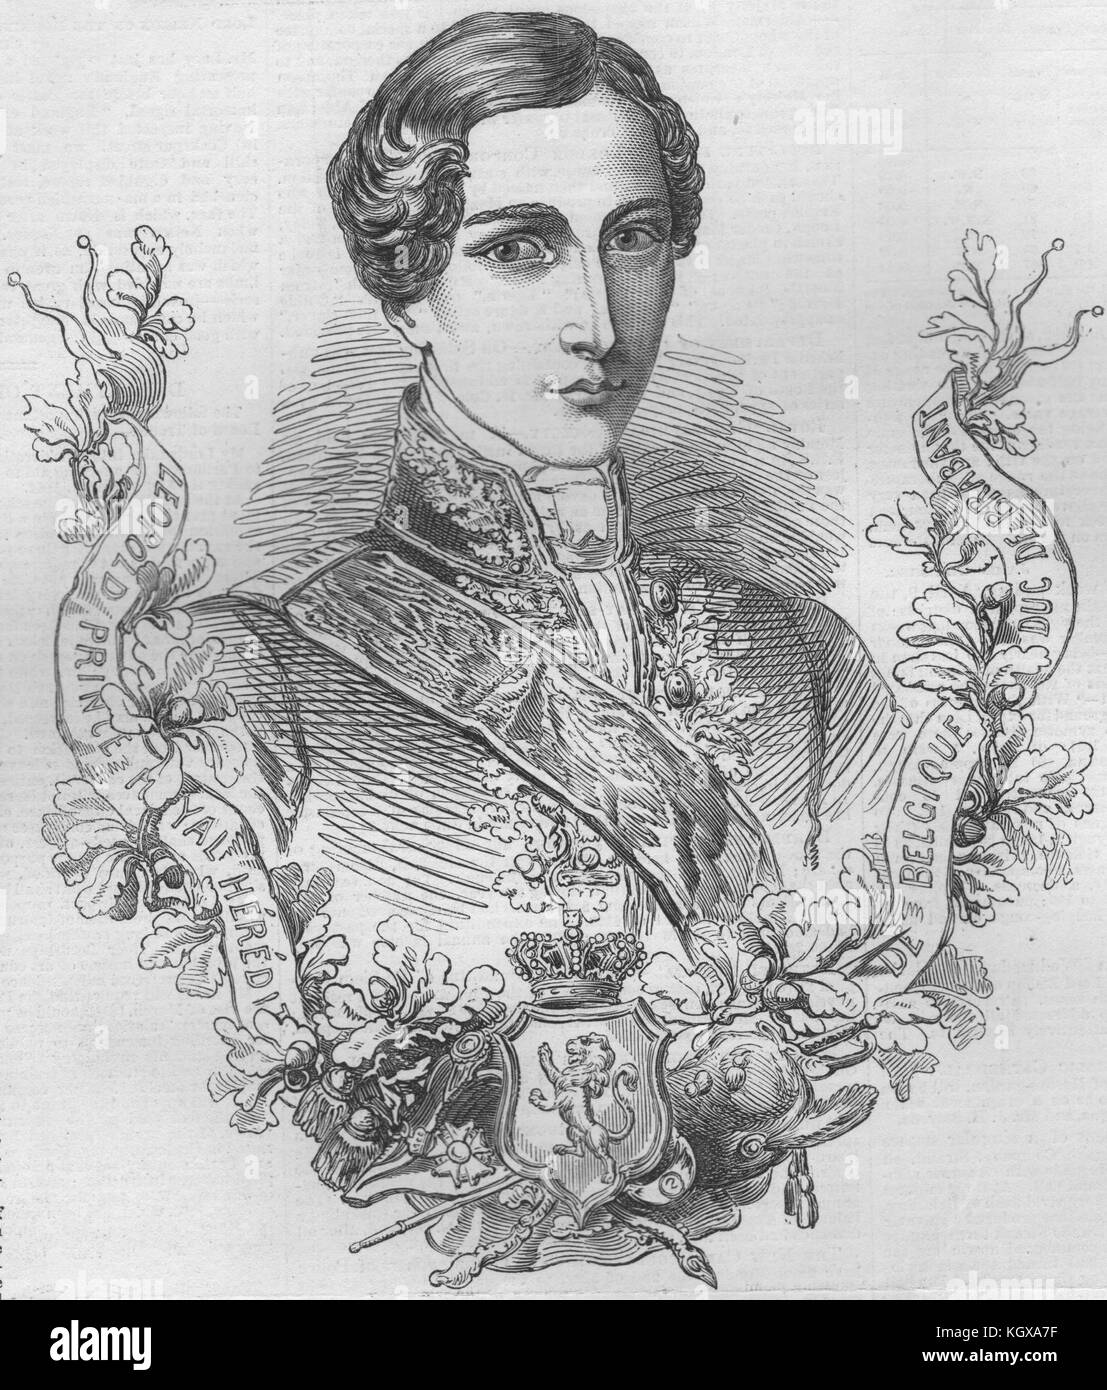 Son Altesse Royale le Duc de Brabant. Belgique 1853. L'Illustrated London News Banque D'Images